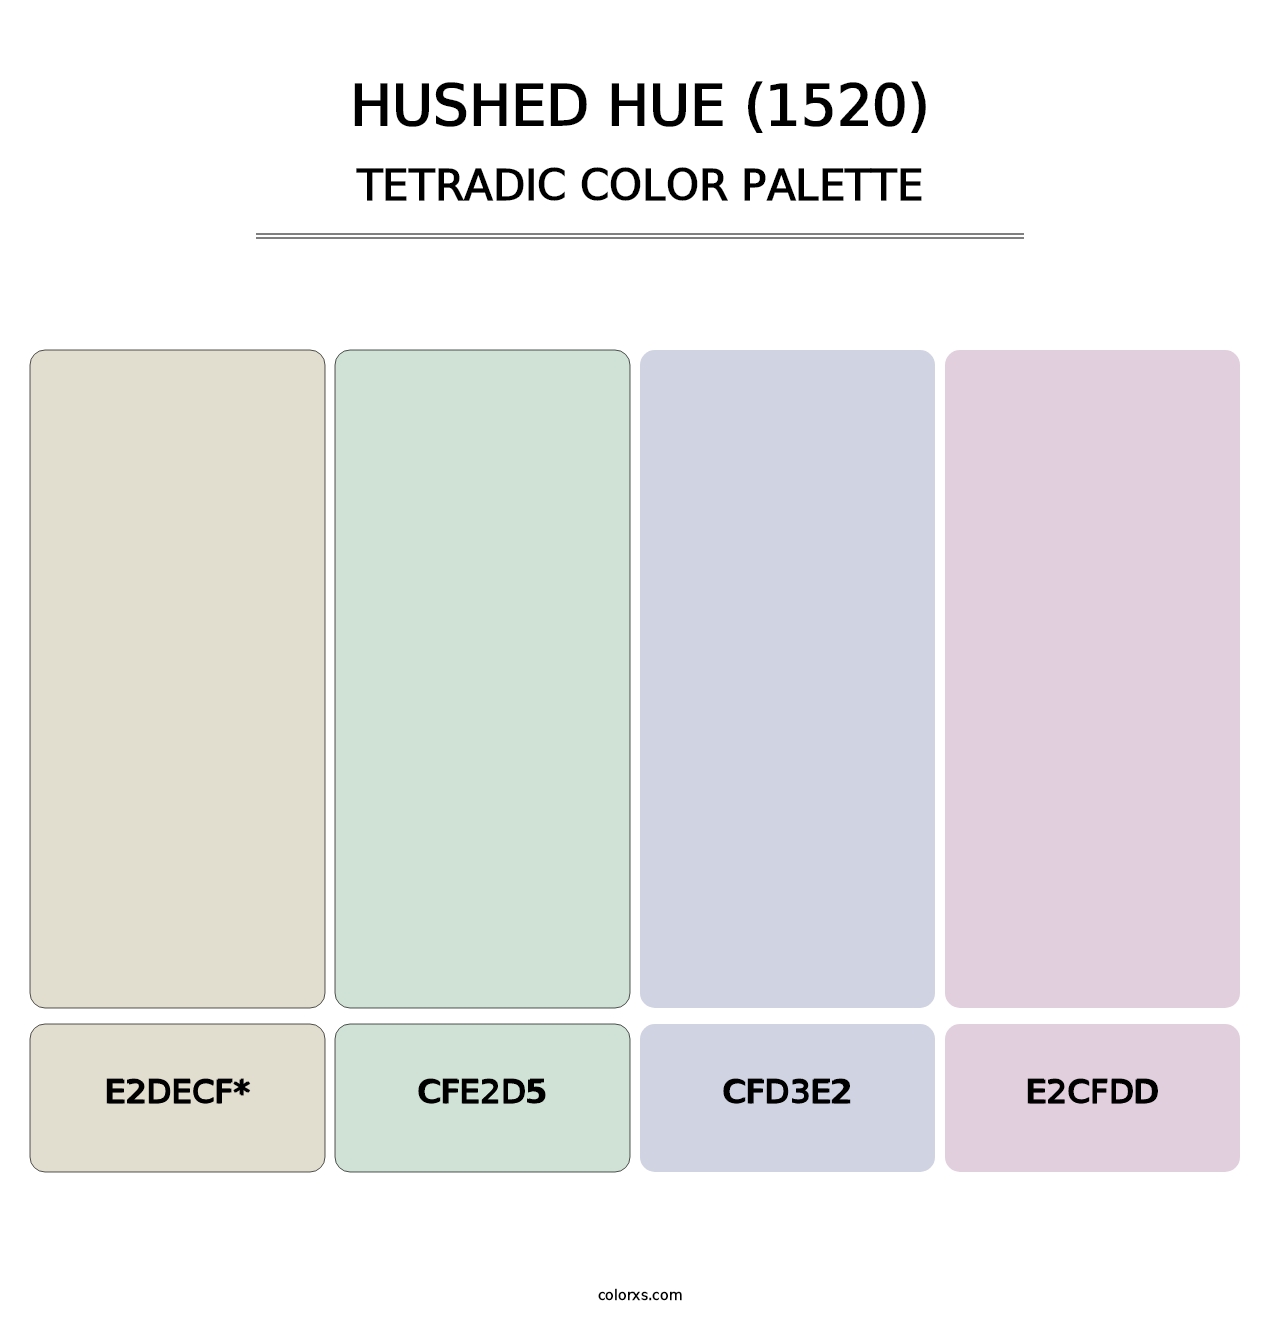 Hushed Hue (1520) - Tetradic Color Palette